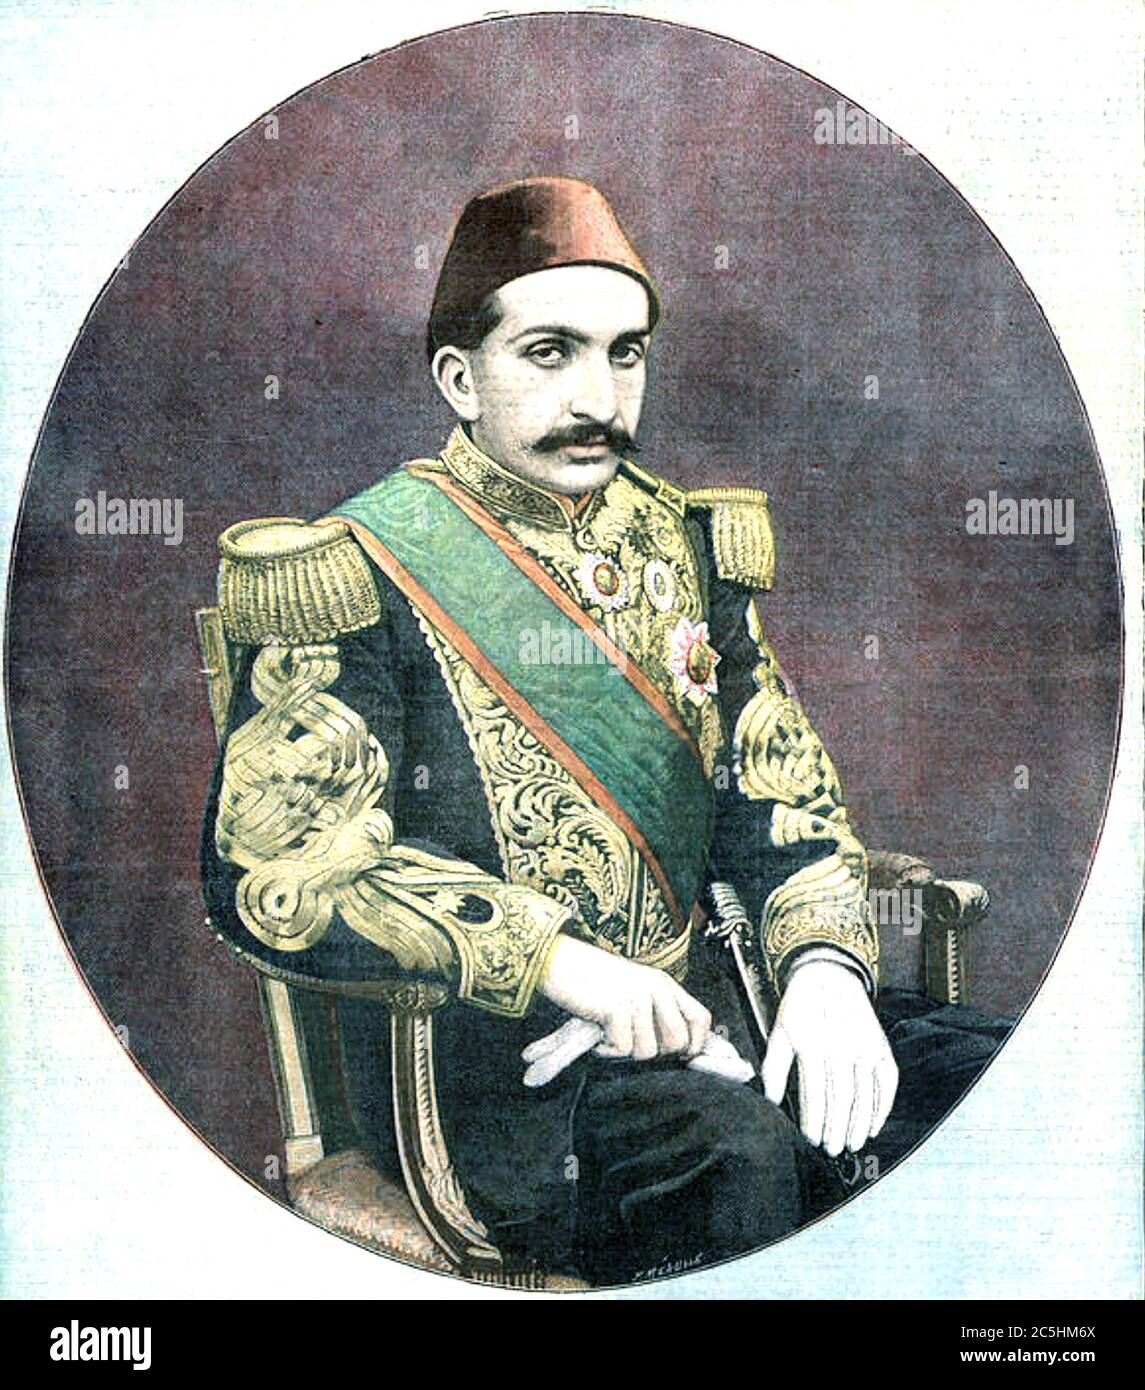 ABDUL HAMID II (1842-1918) 34e Sultan de l'Empire ottoman Photo Stock -  Alamy